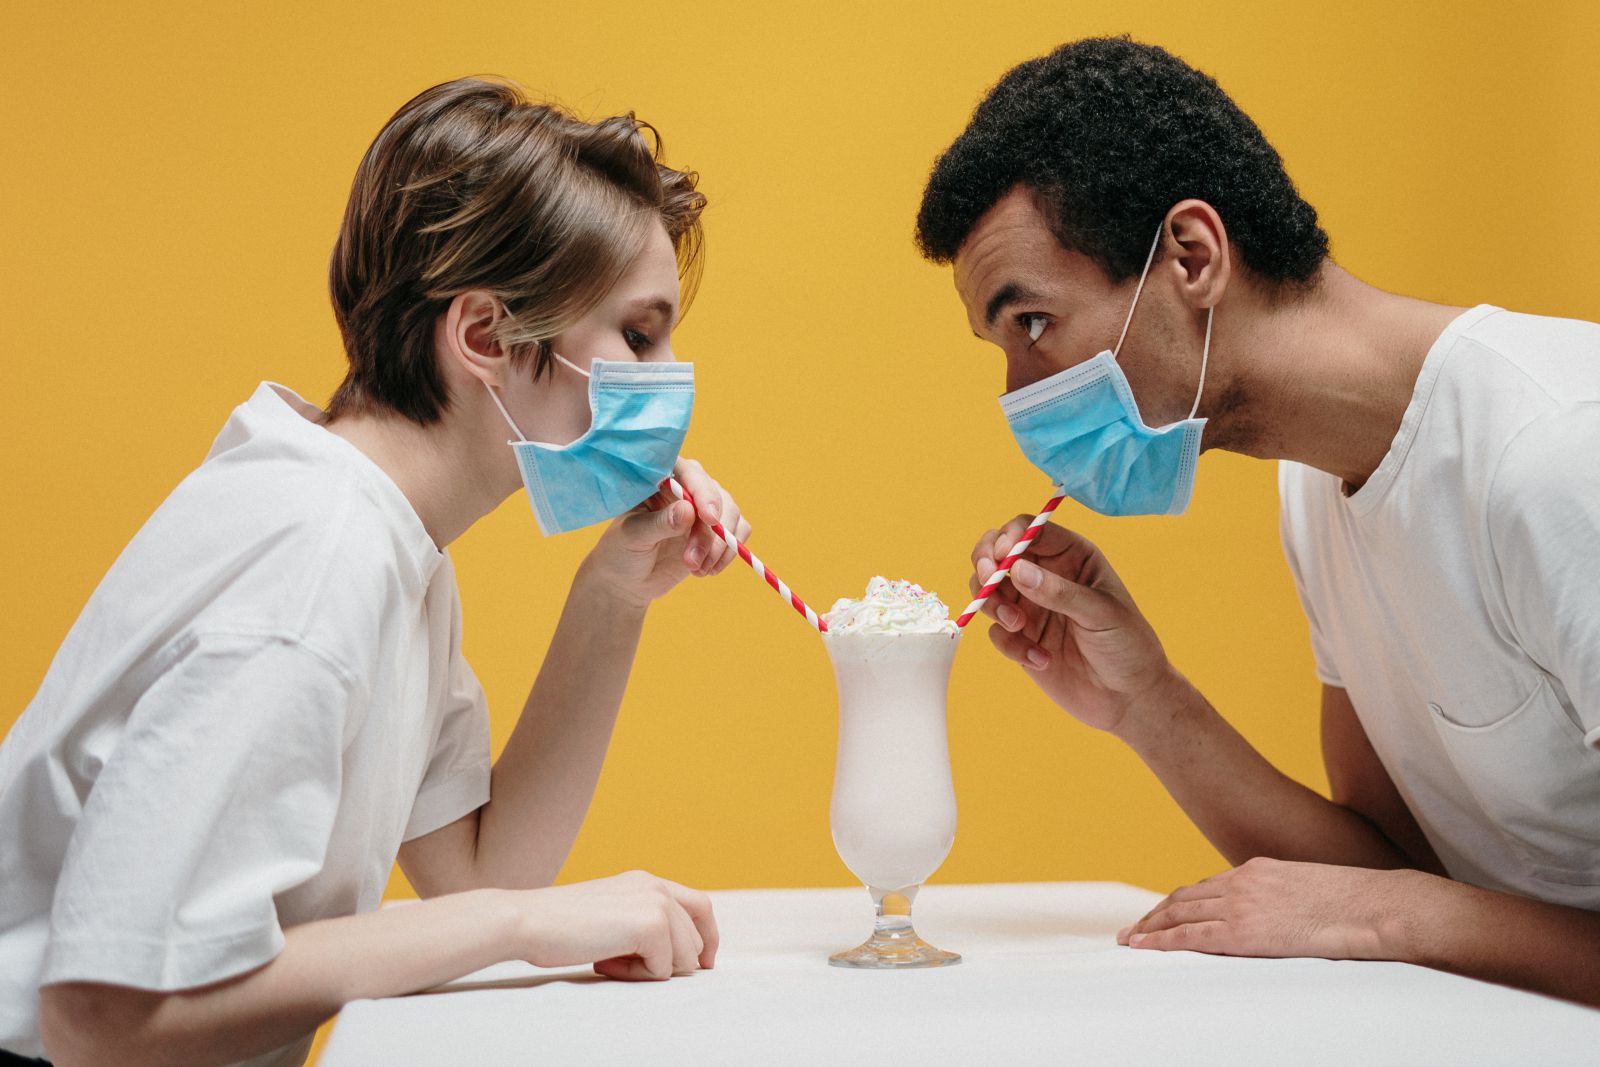 Homem e mulher tomando um milkshake com canudos enquanto usam máscaras de proteção.